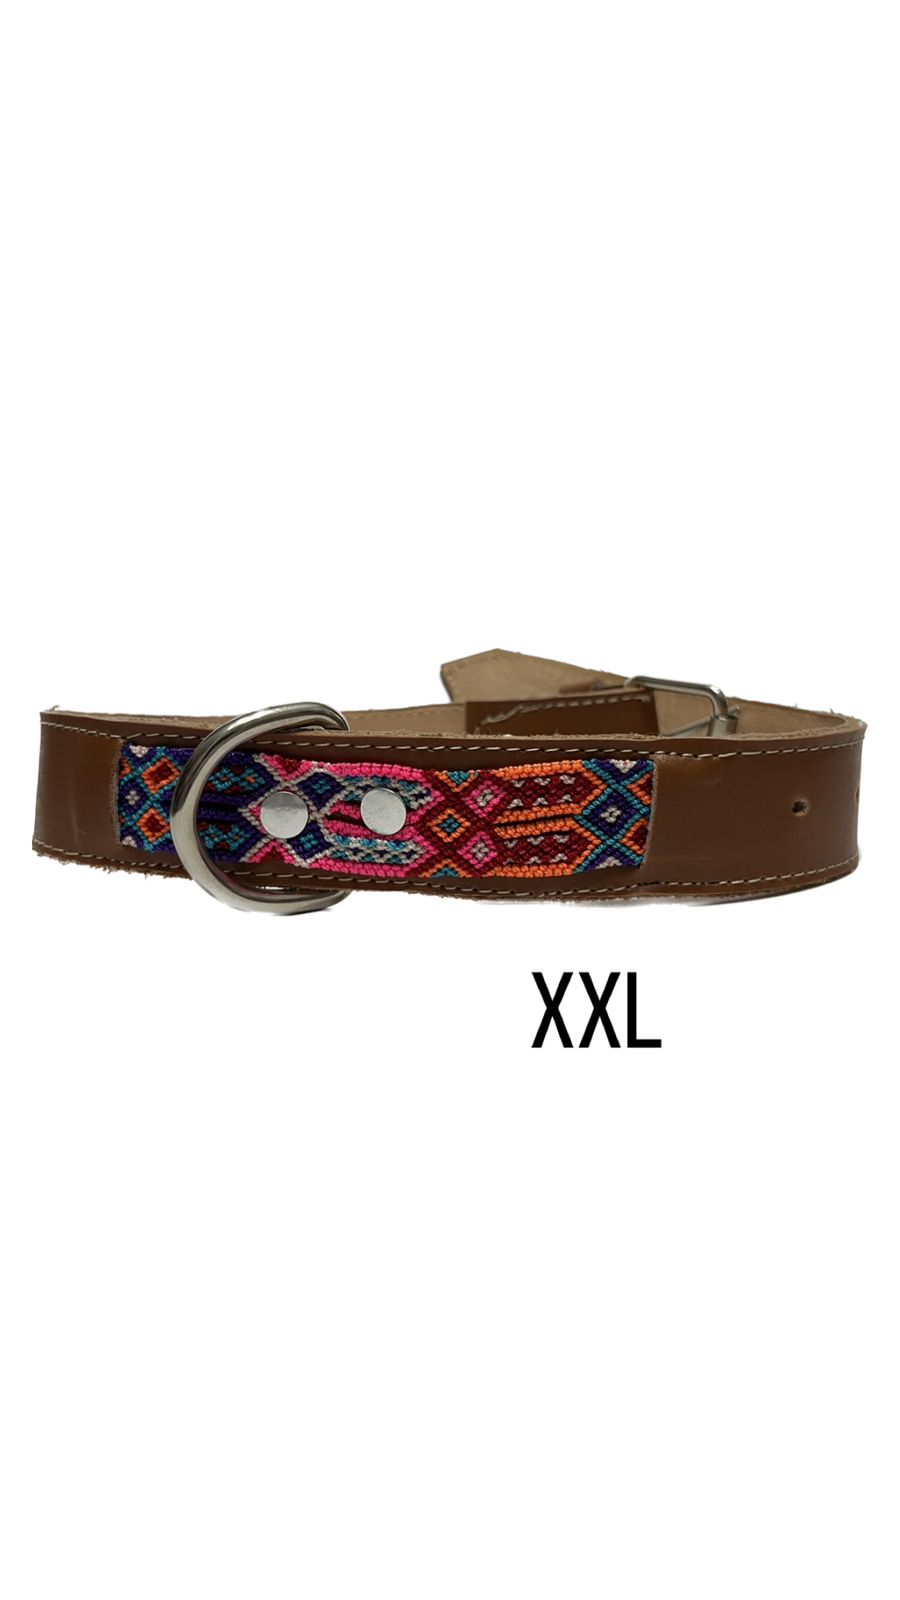 Collar artesanal XXL